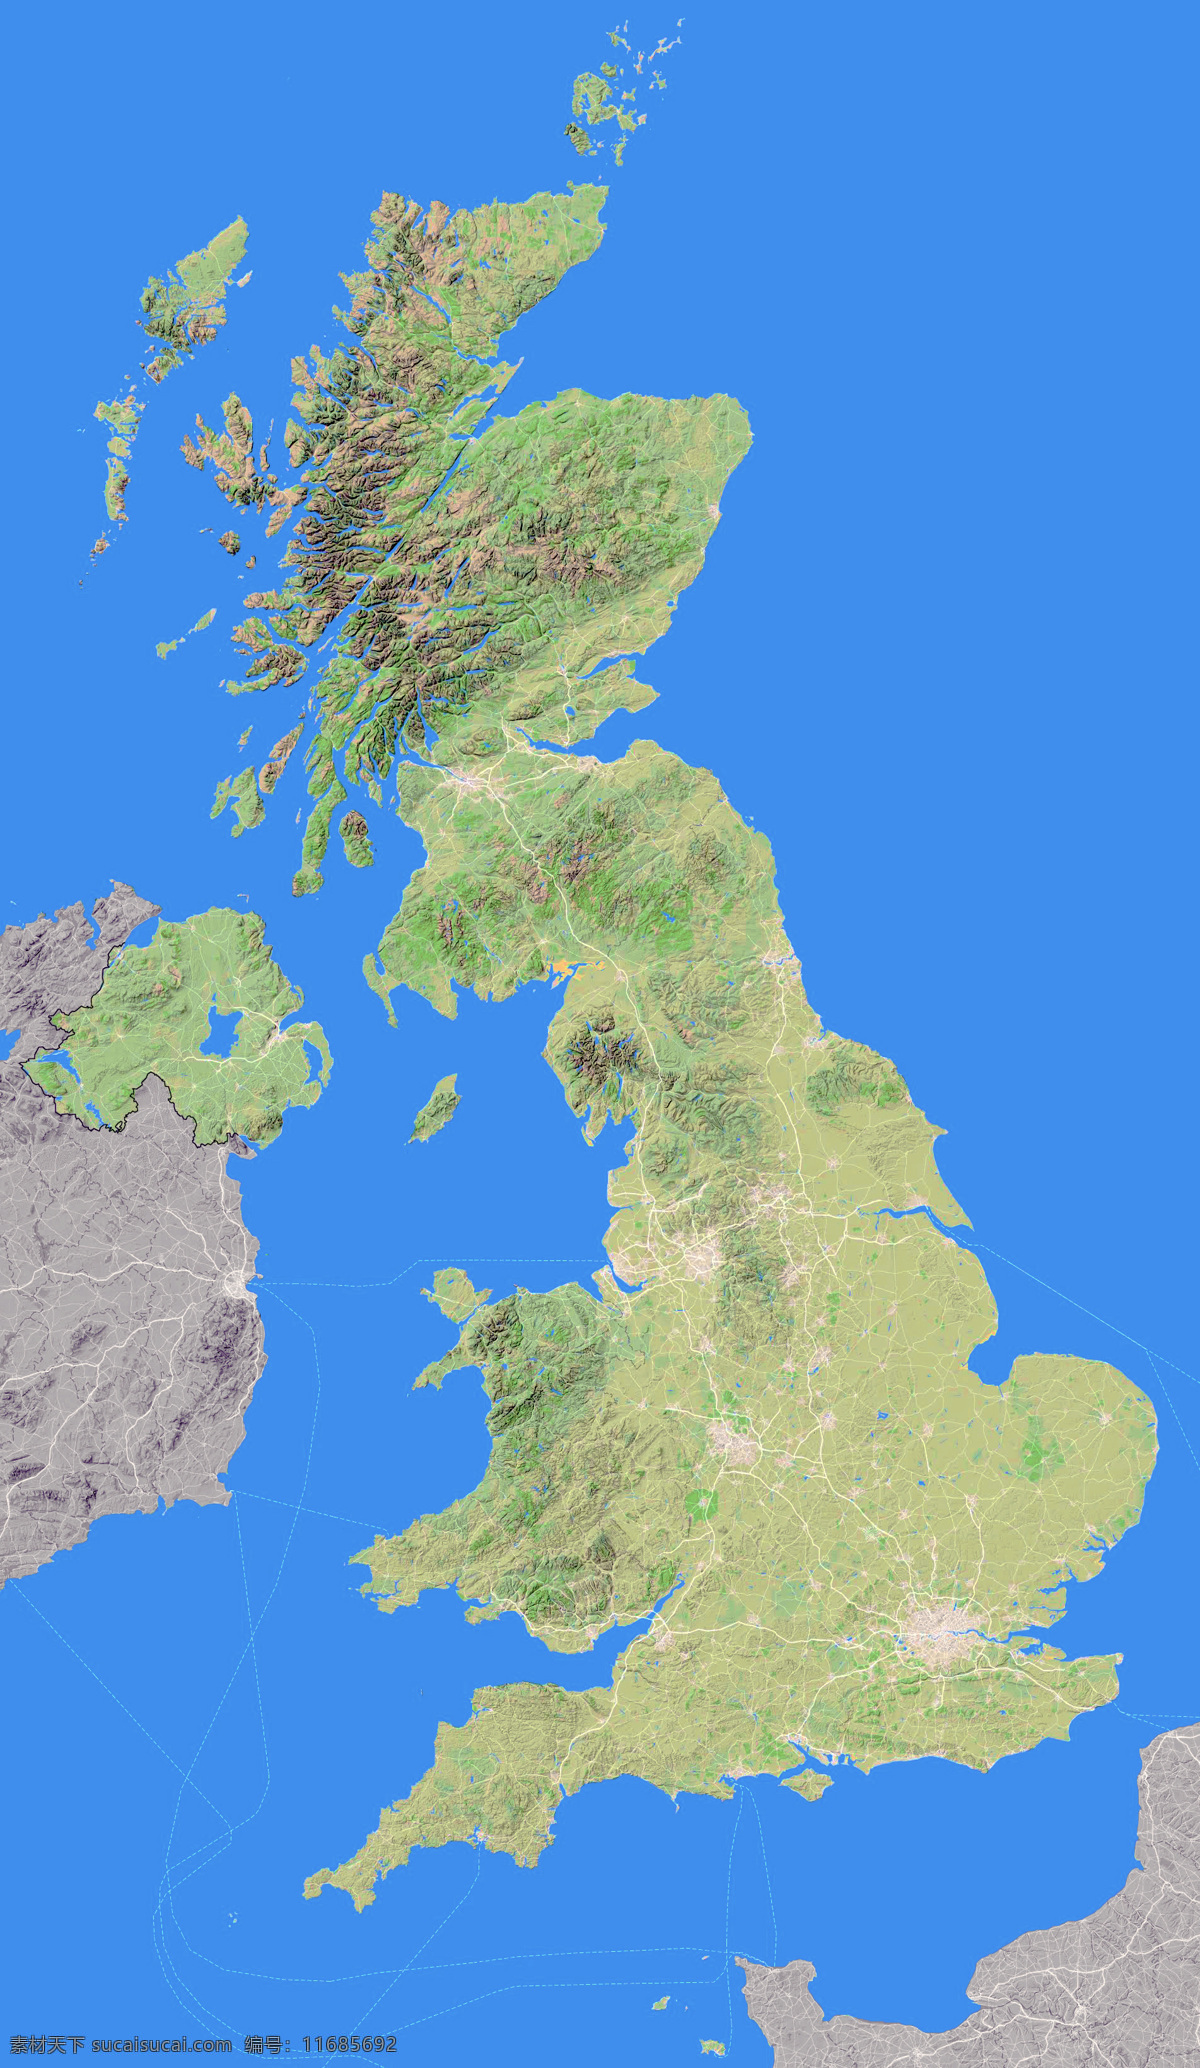 英国地形图 英国 地形图 亚洲 欧洲 非洲 美洲 澳洲 南极洲 上帝之眼 卫星图 俯视图 nasa 地中海 海洋 山地 西西里岛 撒丁岛 阿尔卑斯山 南欧 东欧 地球 自然景观 自然风景